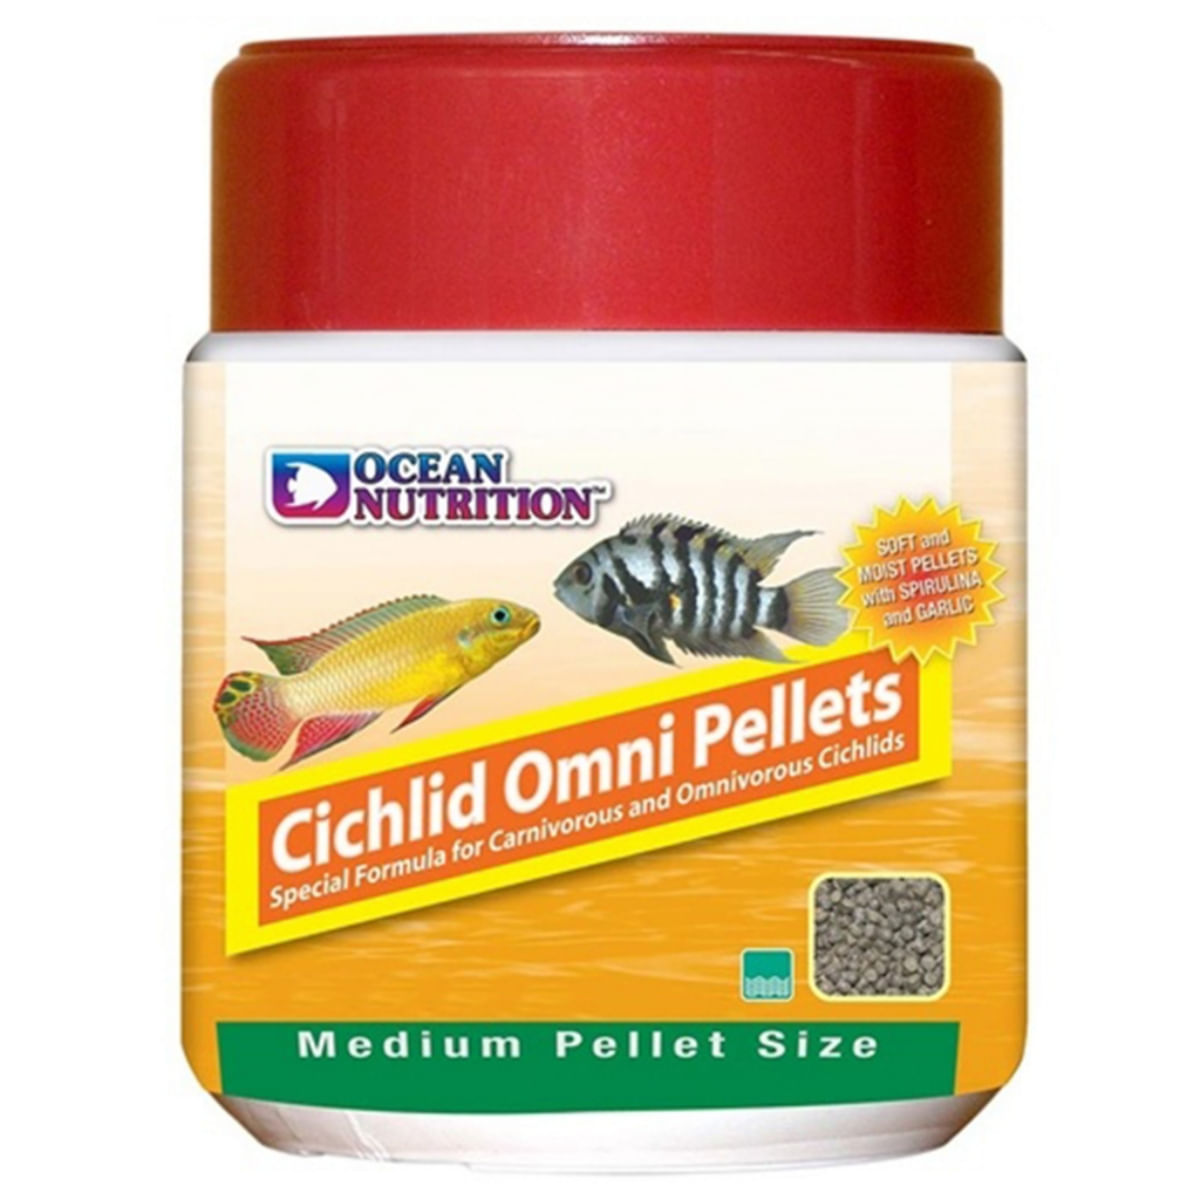 OCEAN NUTRITION Cichlid Omni Pellets Medium, 100g 100g